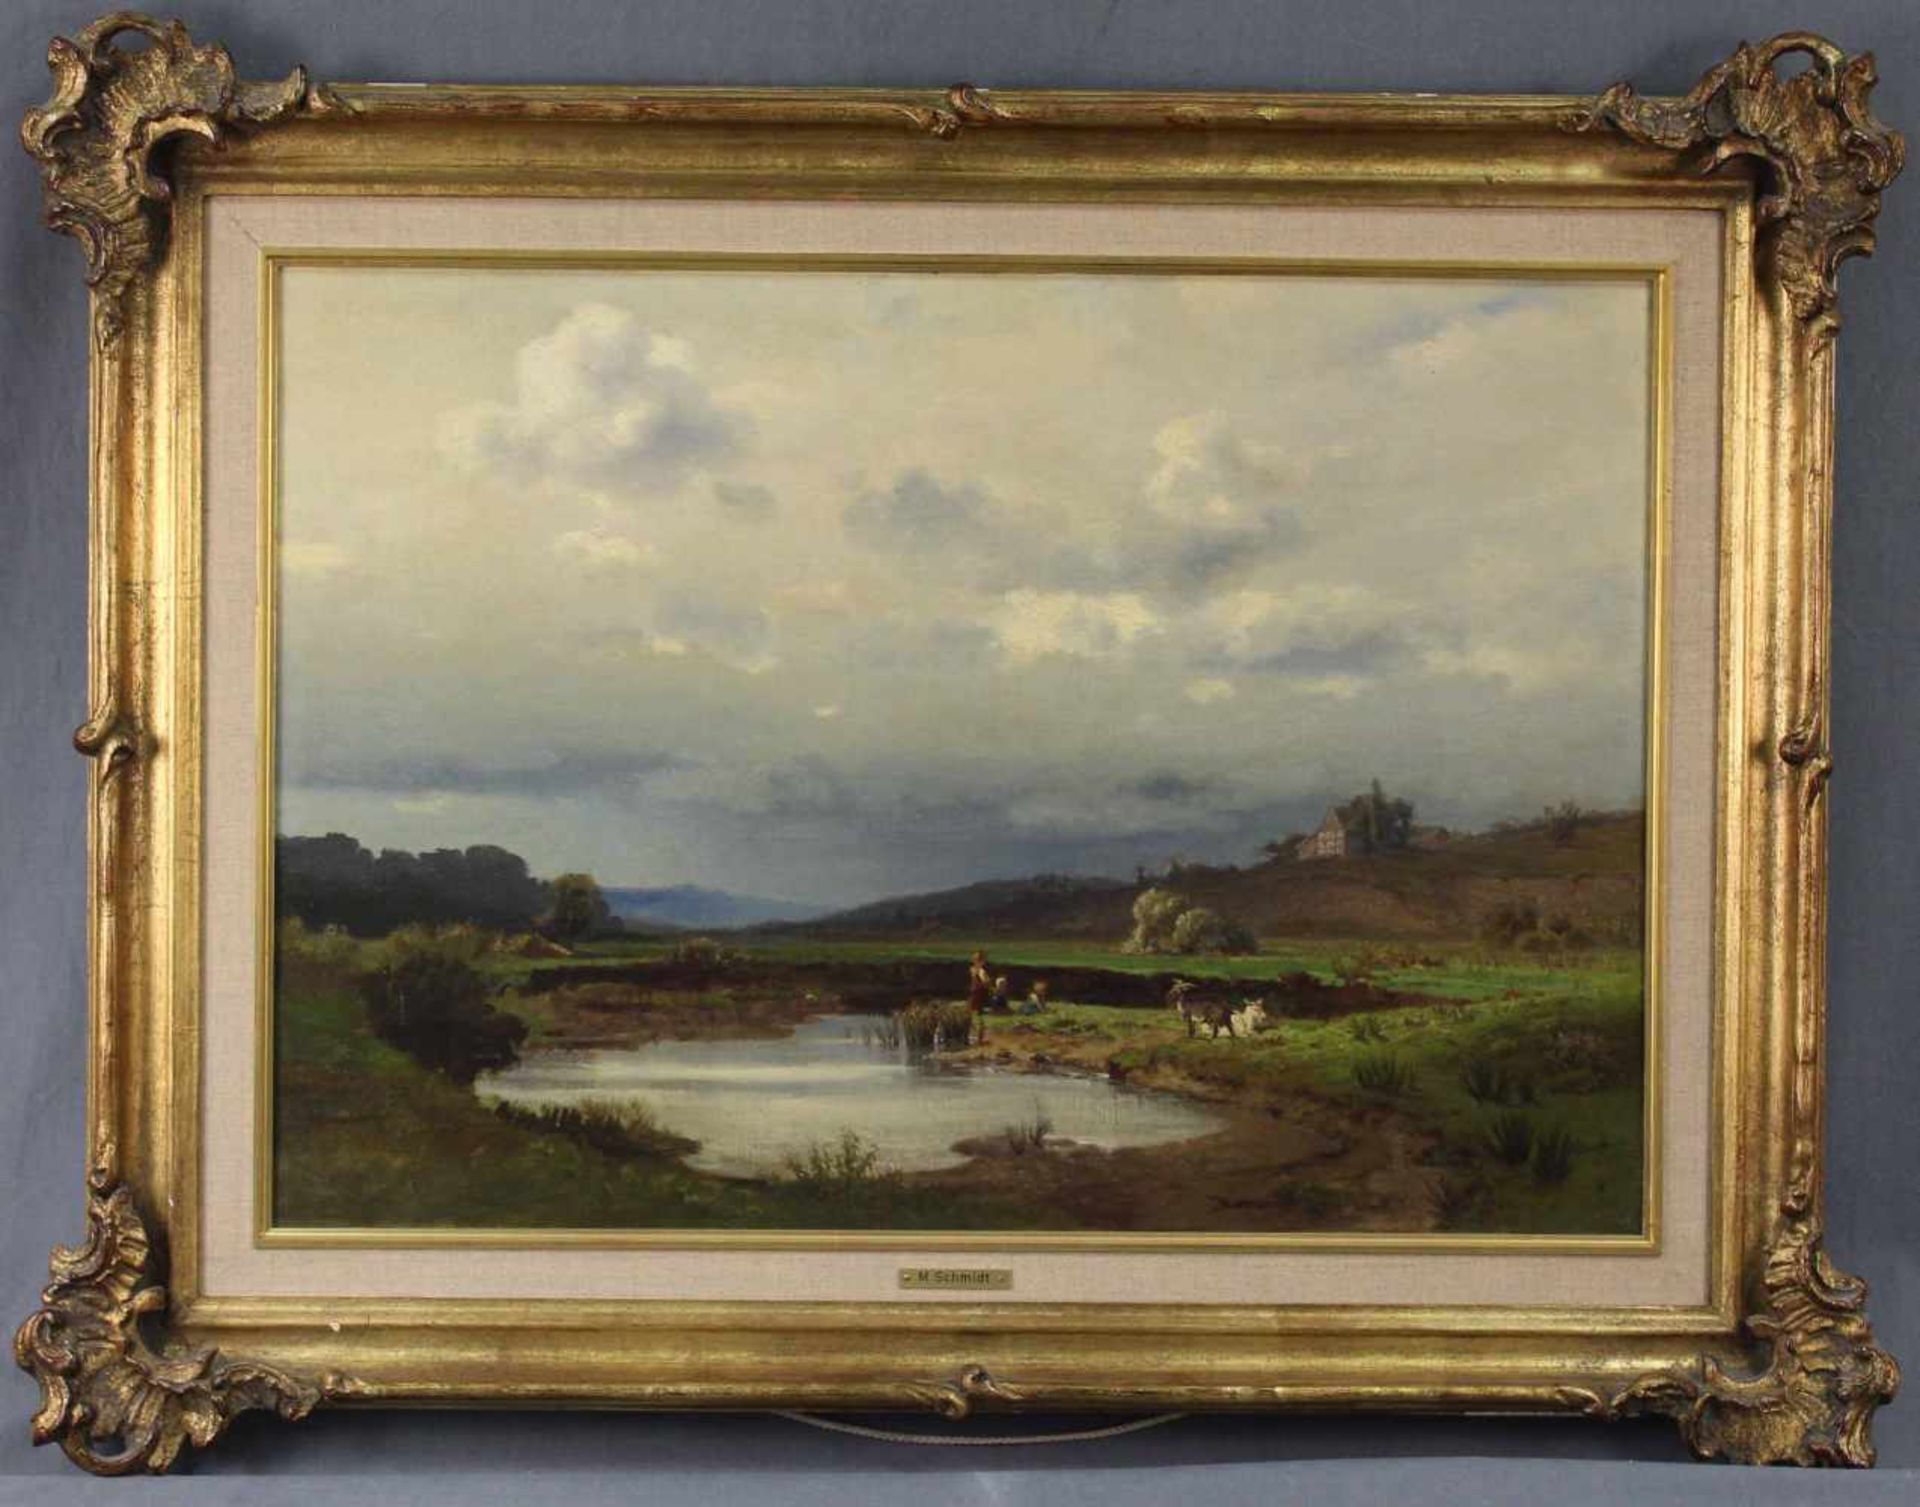 Max SCHMIDT (1818 - 1901). "Am Weiher"45 cm x 64 cm. Gemälde. Öl auf Leinwand. Verso Aufkleber. - Bild 2 aus 8